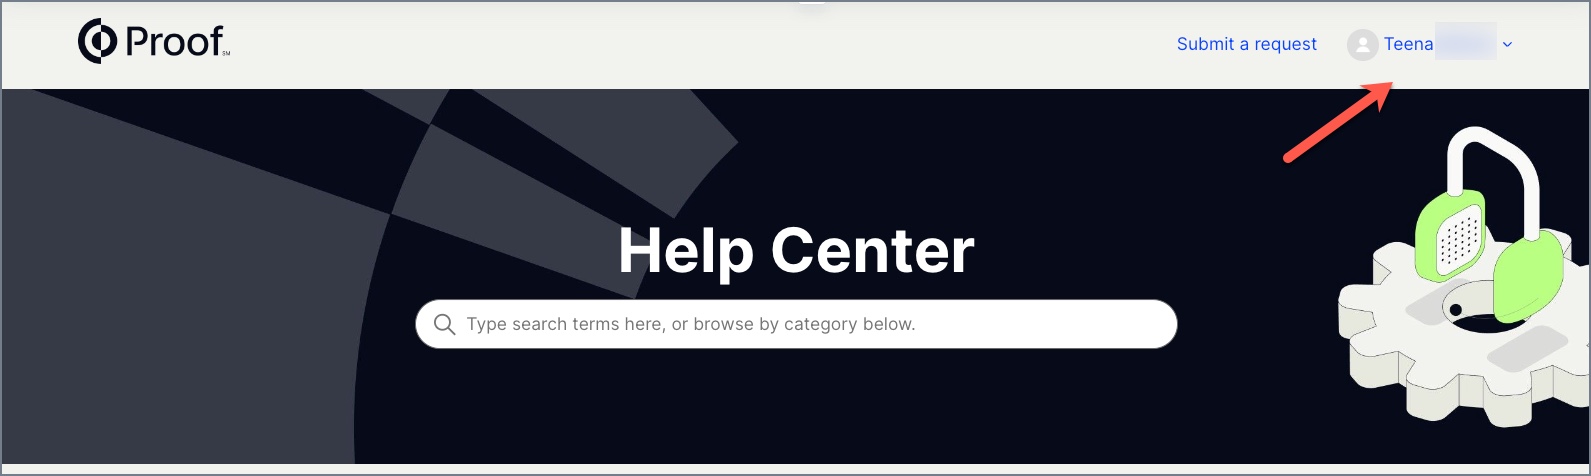 help center login help.jpg